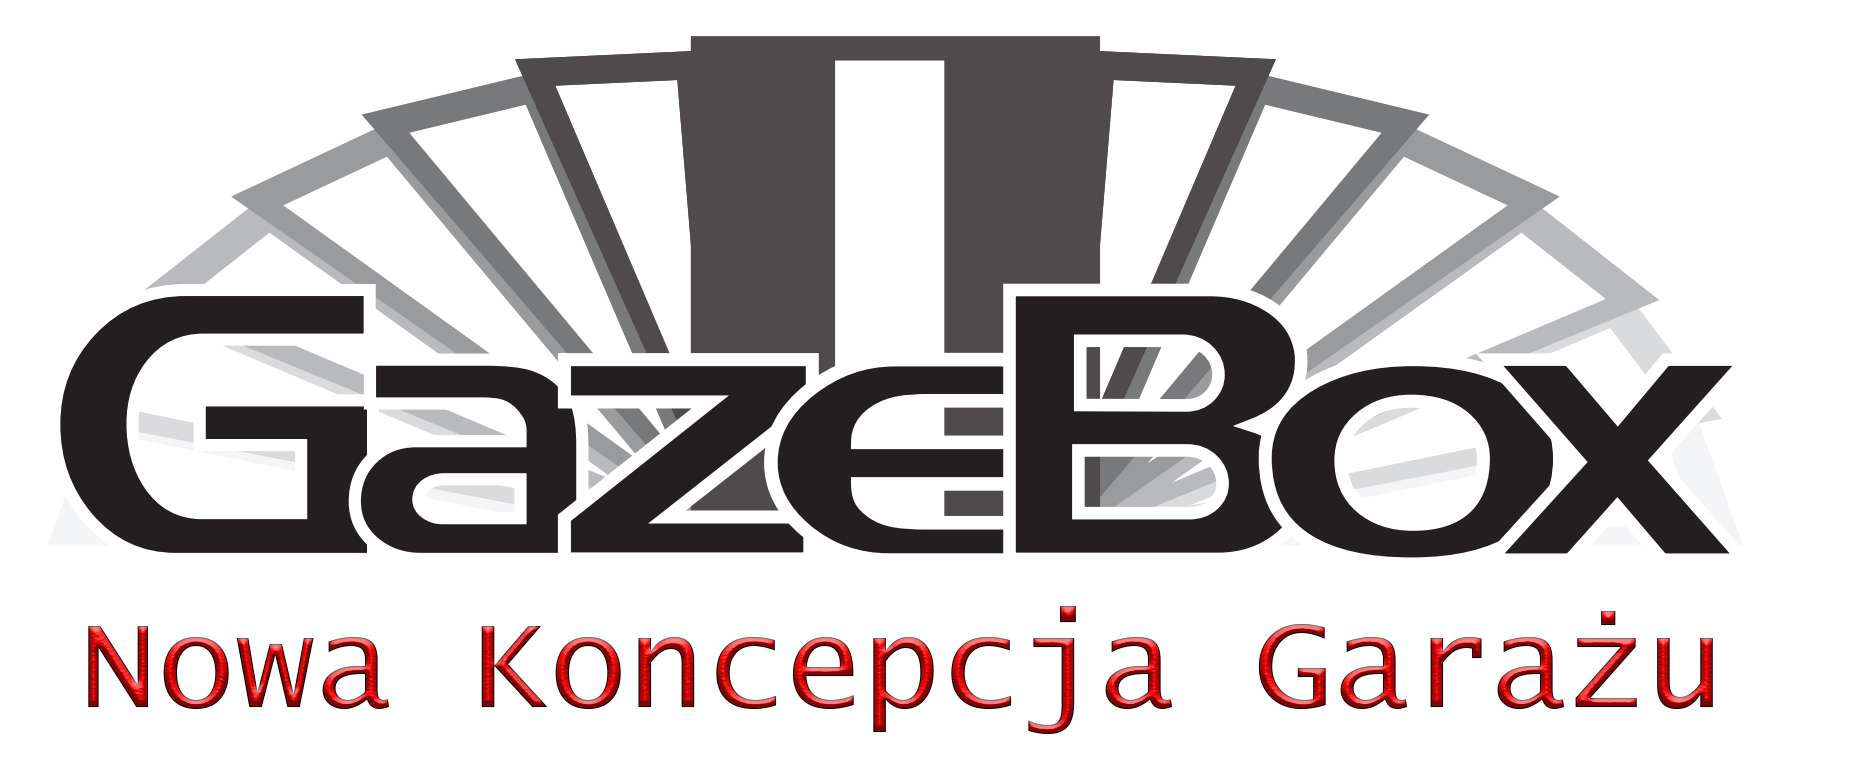 gazebox_logo_JT